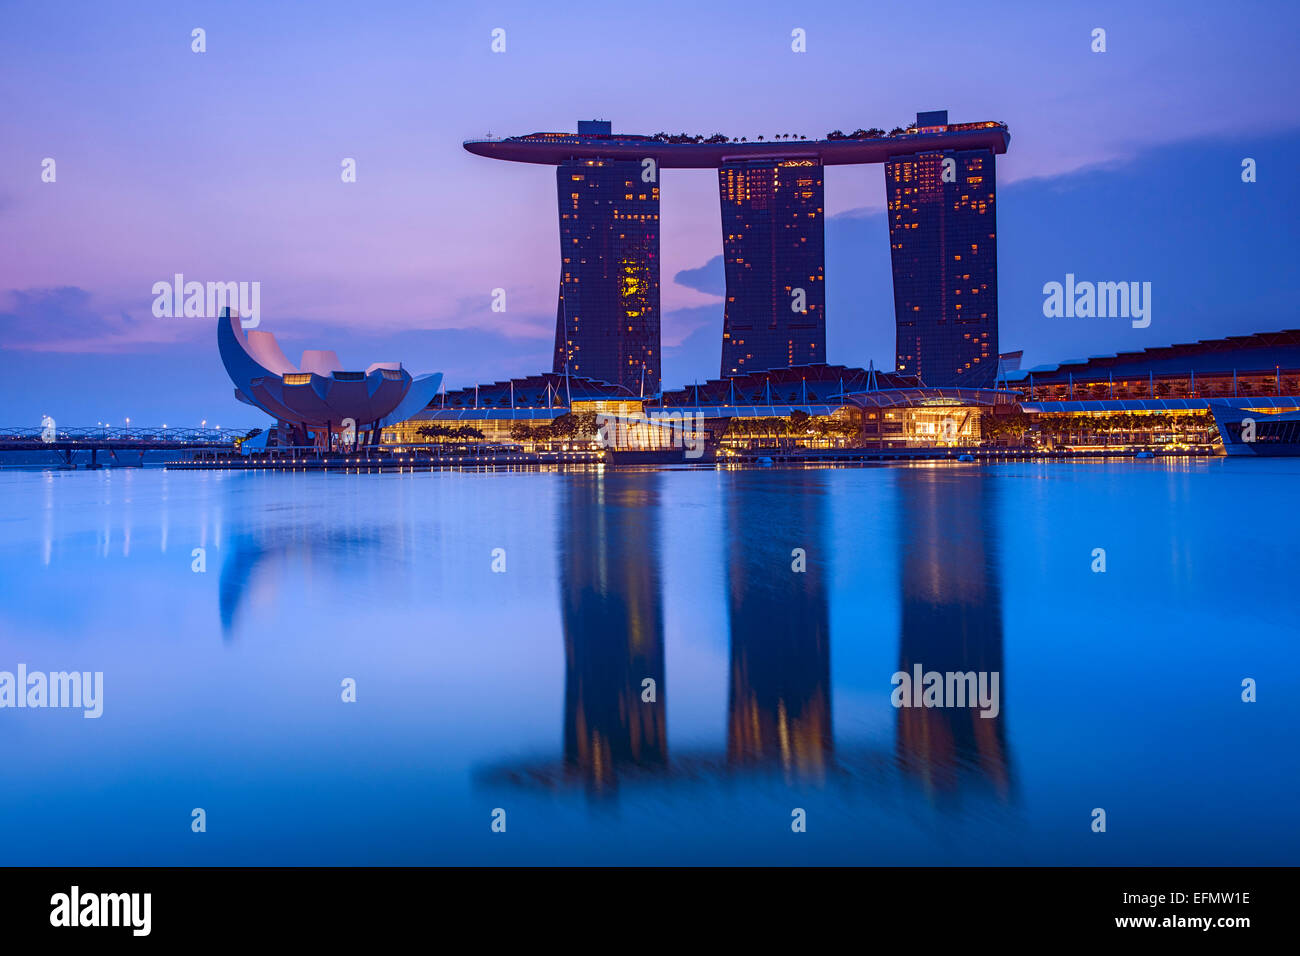 Le Marina Bay Sands Hotel et l'Art Science Museum de Singapour à l'aube. Banque D'Images